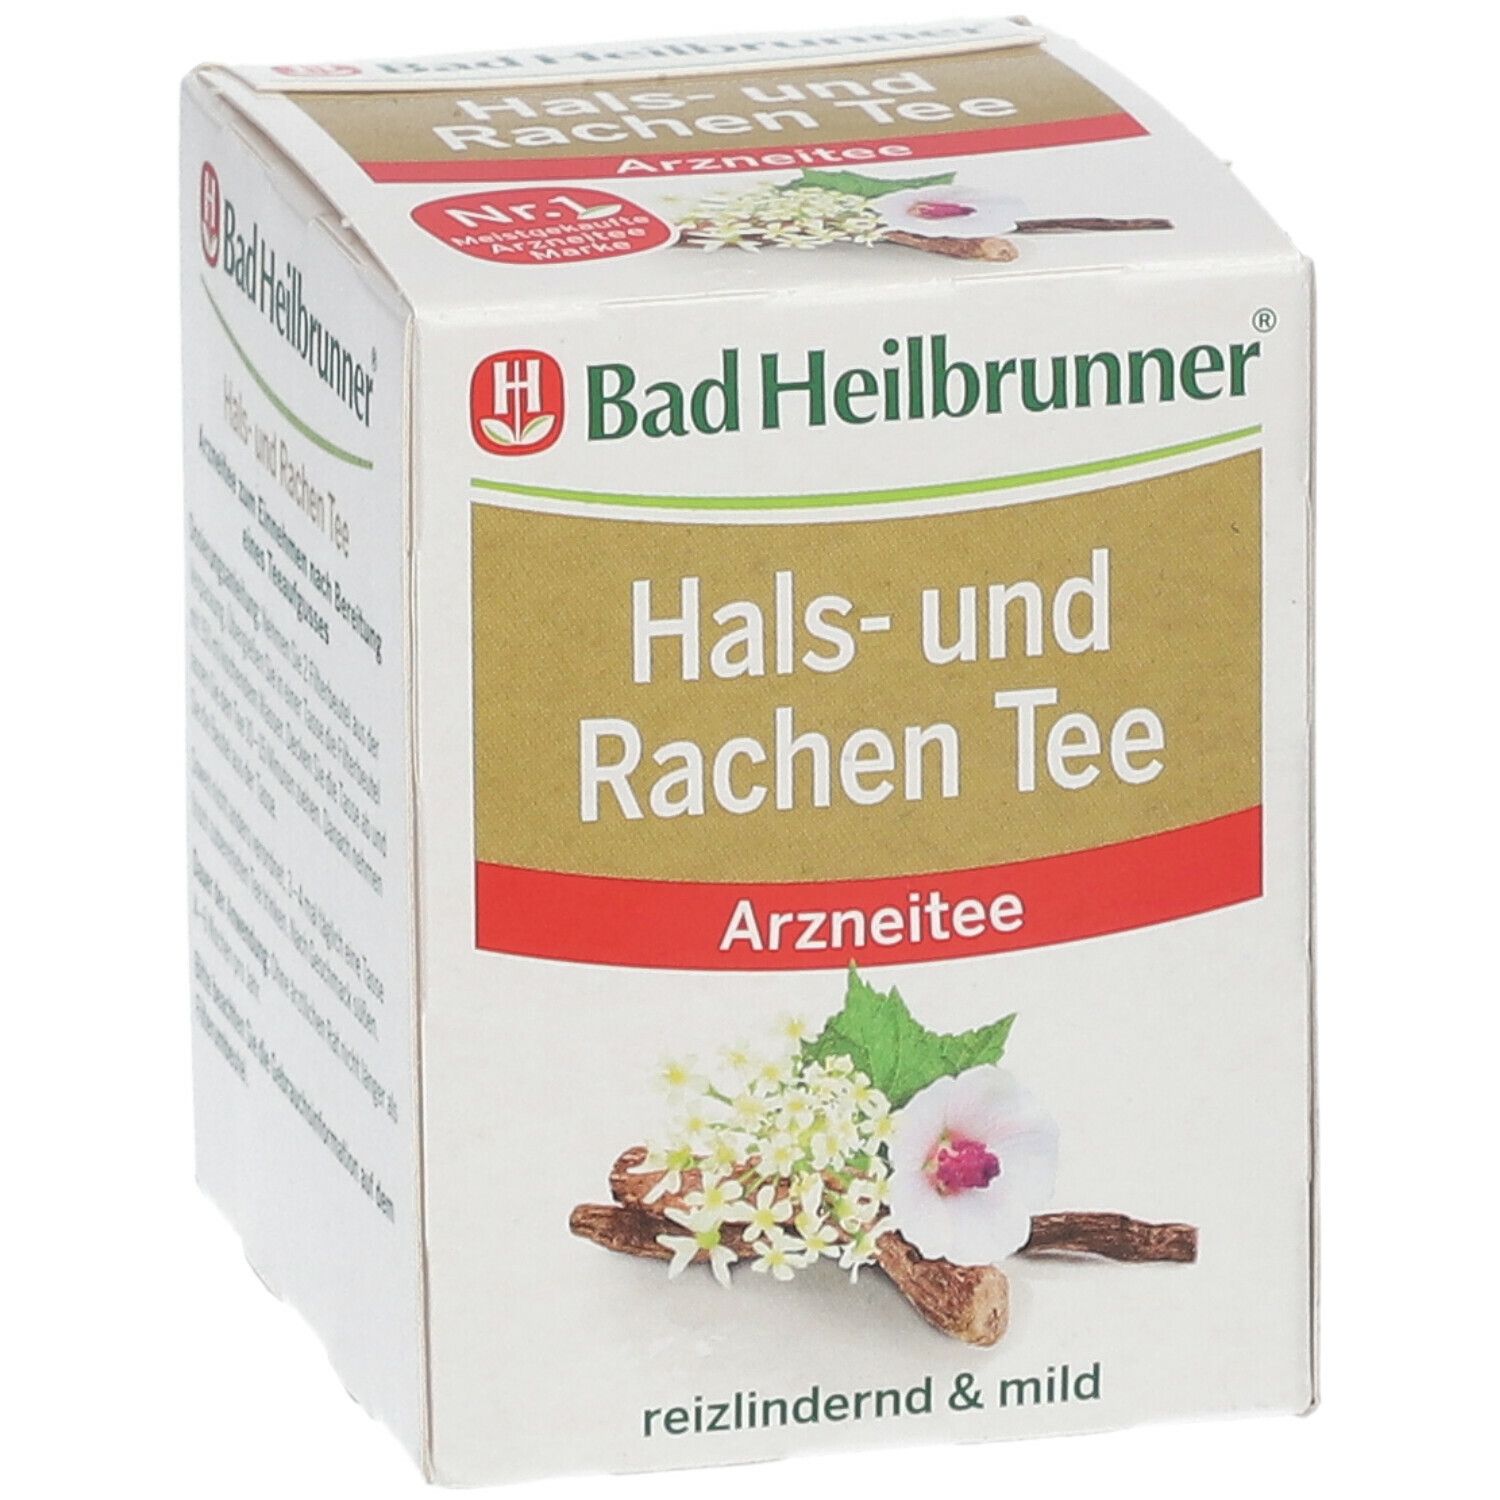 Bad Heilbrunner® Hals- und Rachen Tee